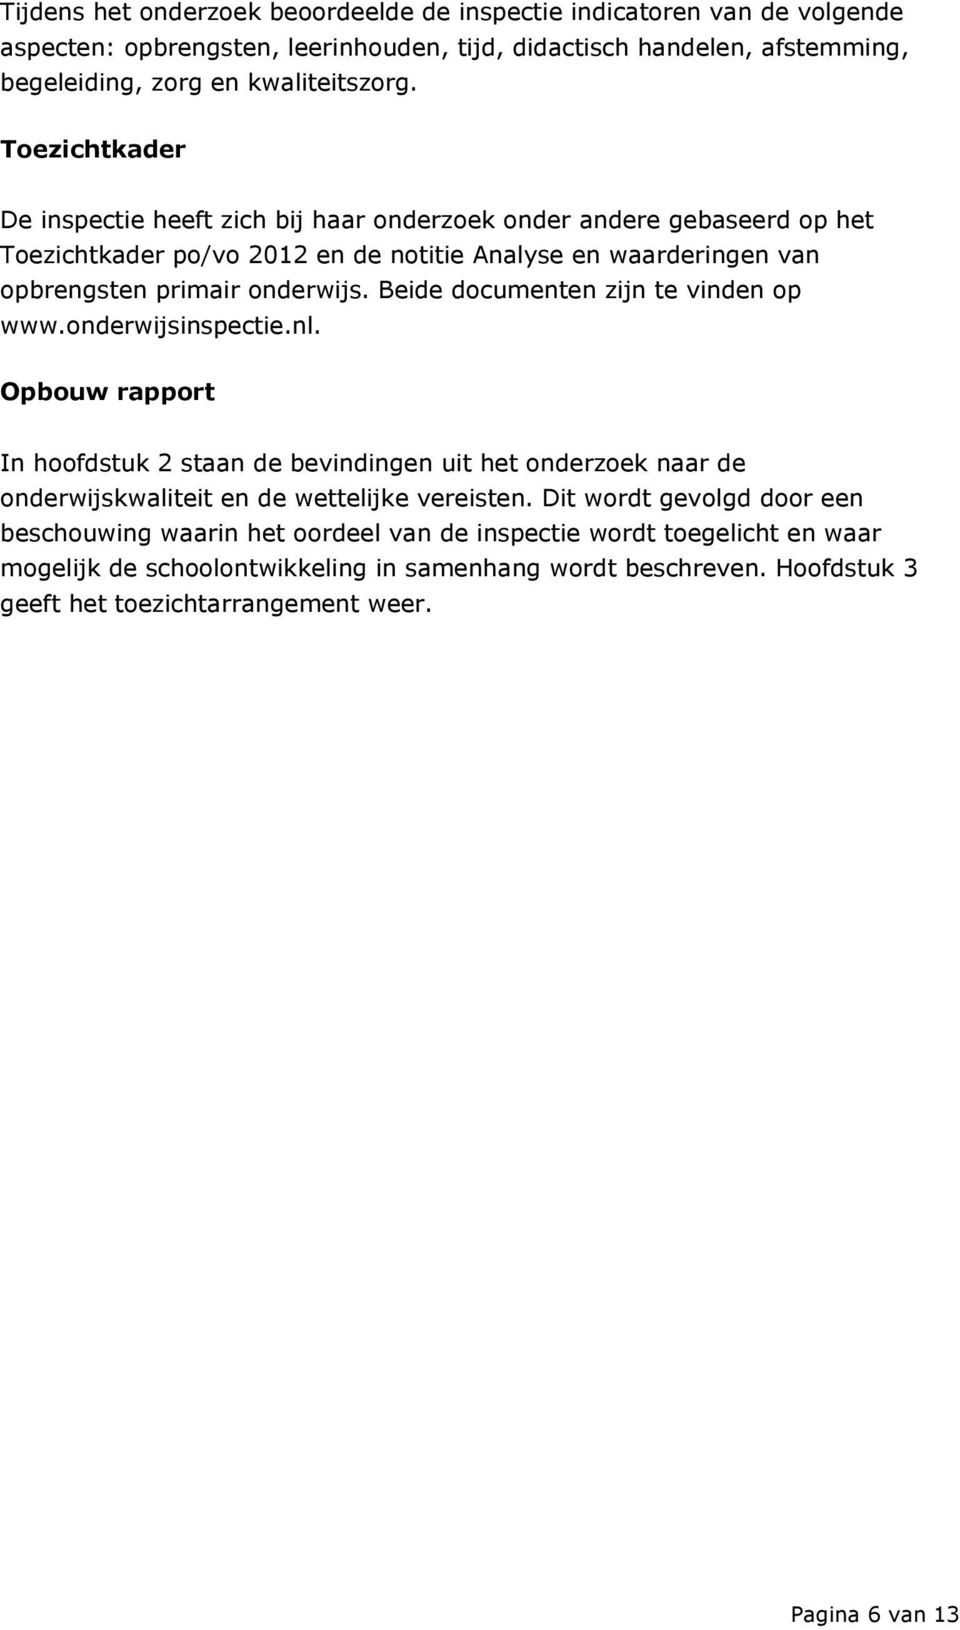 Beide documenten zijn te vinden op www.onderwijsinspectie.nl. Opbouw rapport In hoofdstuk 2 staan de bevindingen uit het onderzoek naar de onderwijskwaliteit en de wettelijke vereisten.